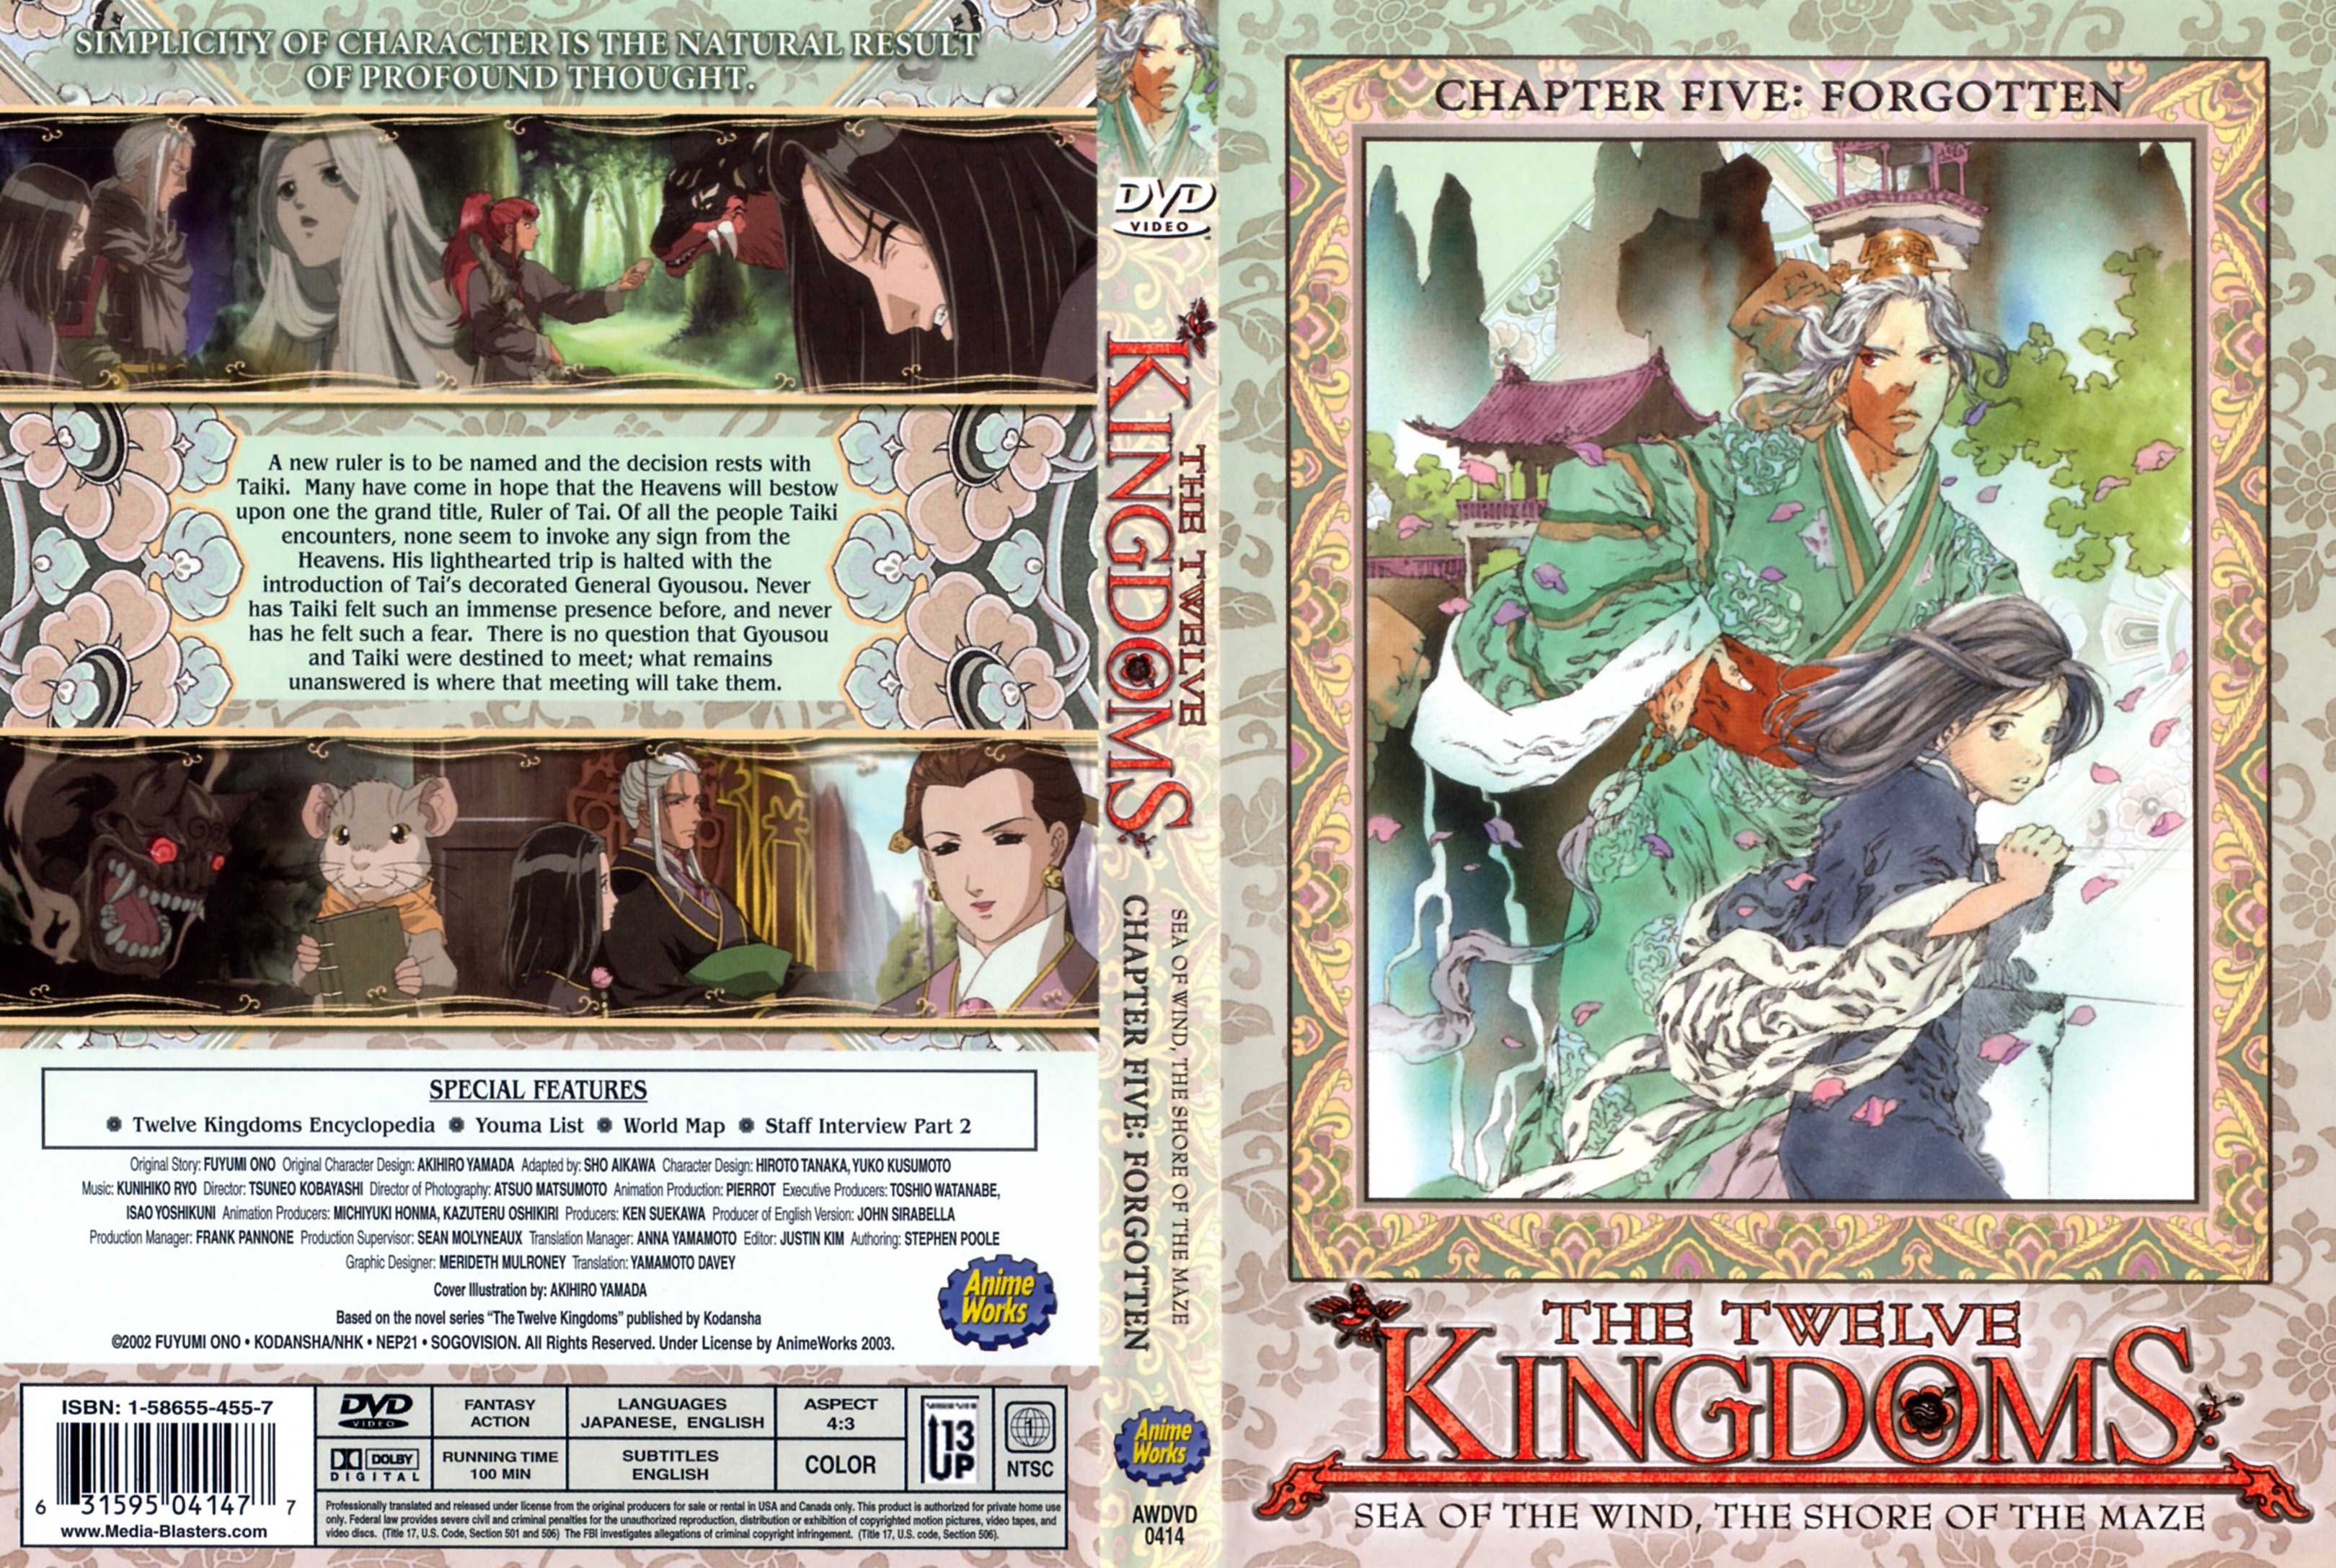 Jaquette DVD The twelve kingdoms vol 5 Zone 1